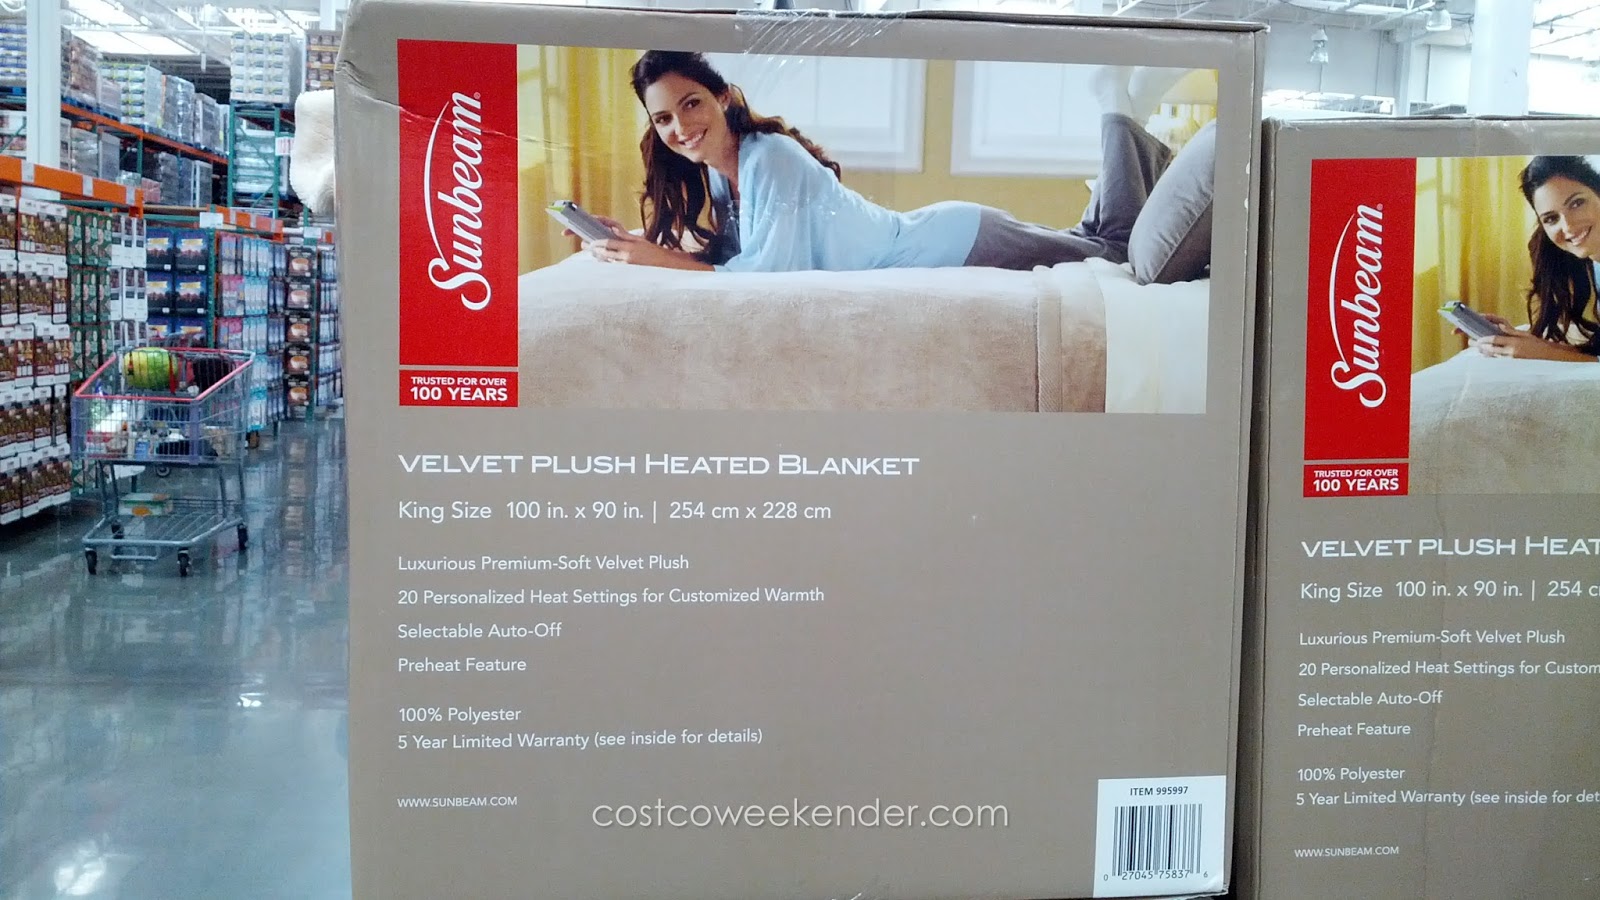 Sunbeam Velvet Plush Heated Blanket (king size) Costco